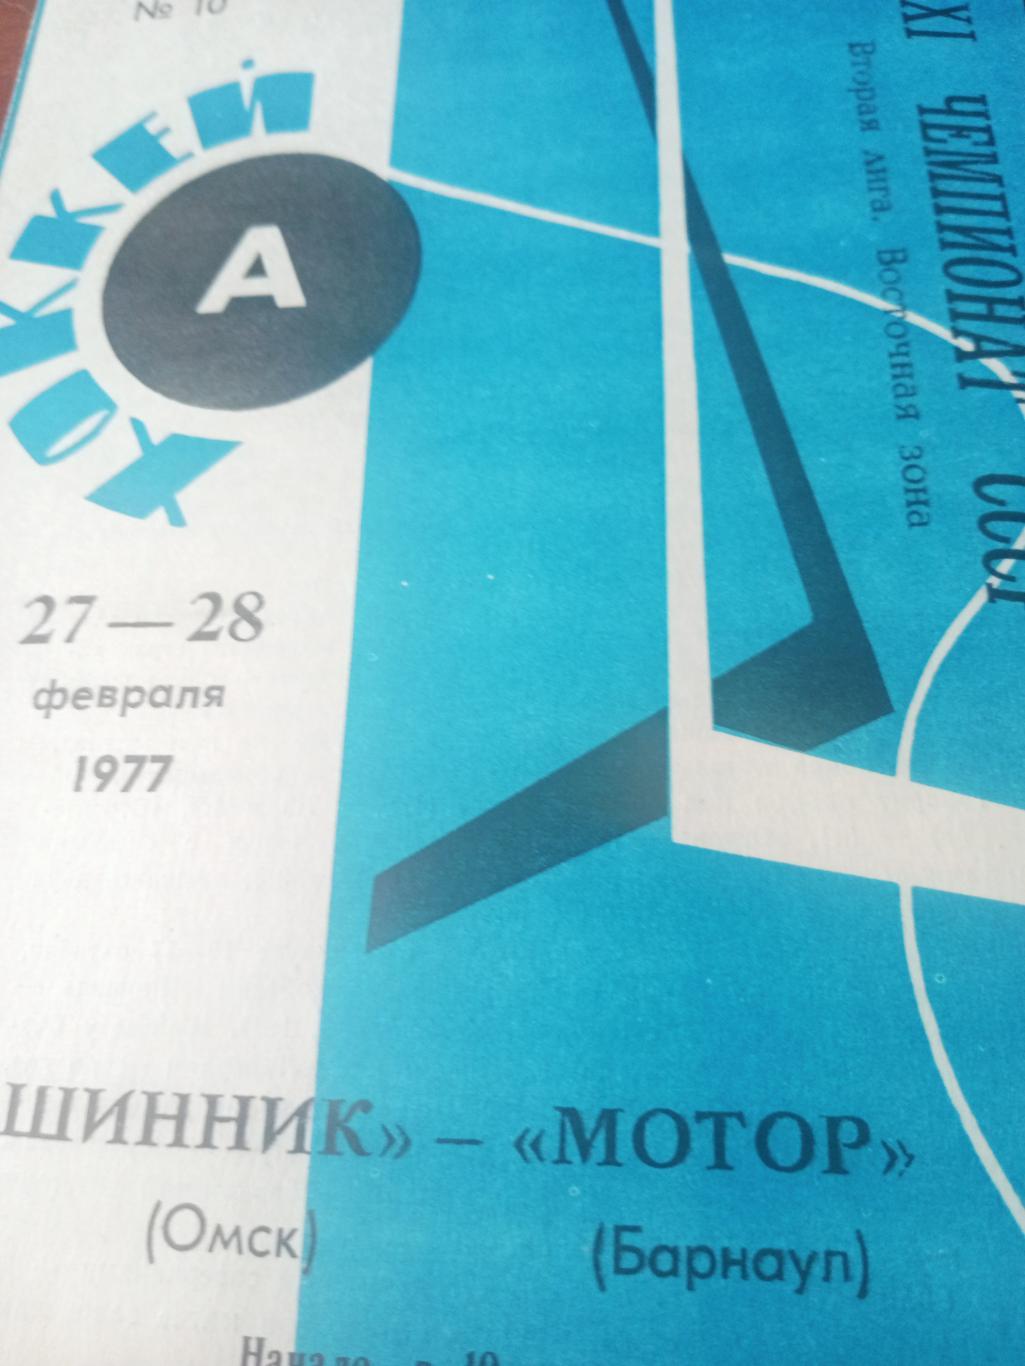 Шинник Омск - Мотор Барнаул. 27 и 28 февраля 1977 год